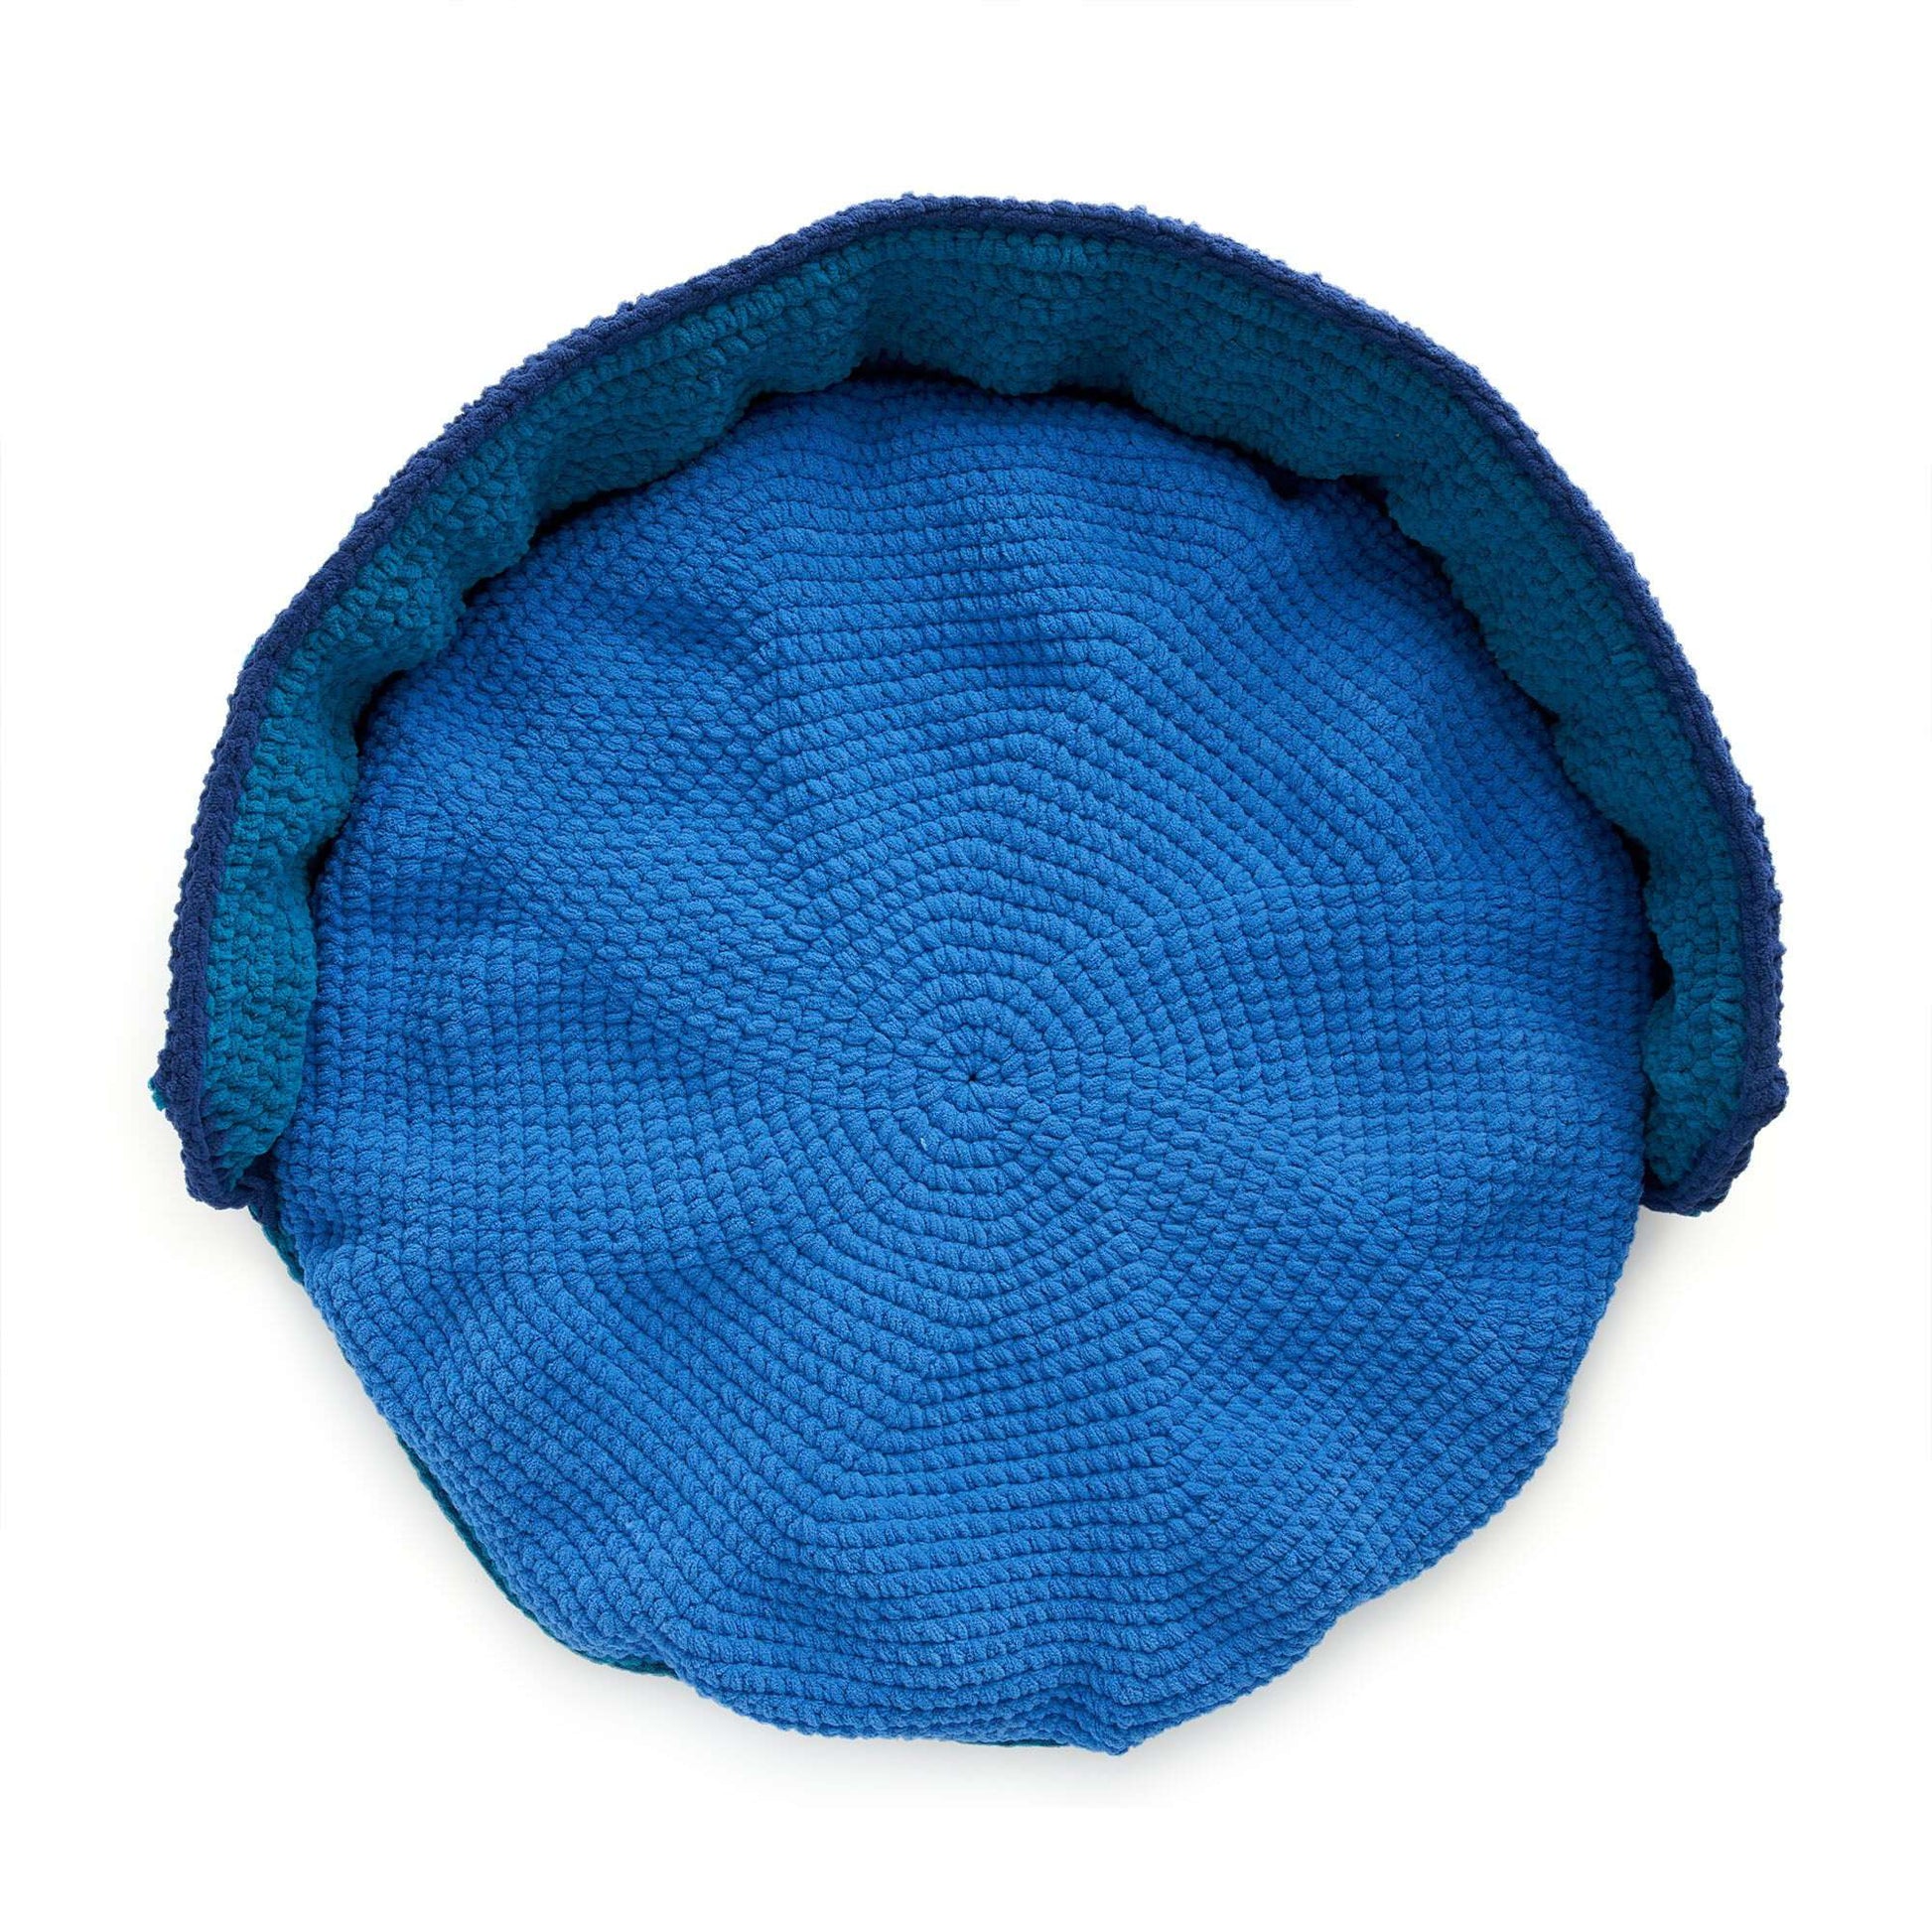 Free Bernat Delux Crochet Pet Bed Pattern